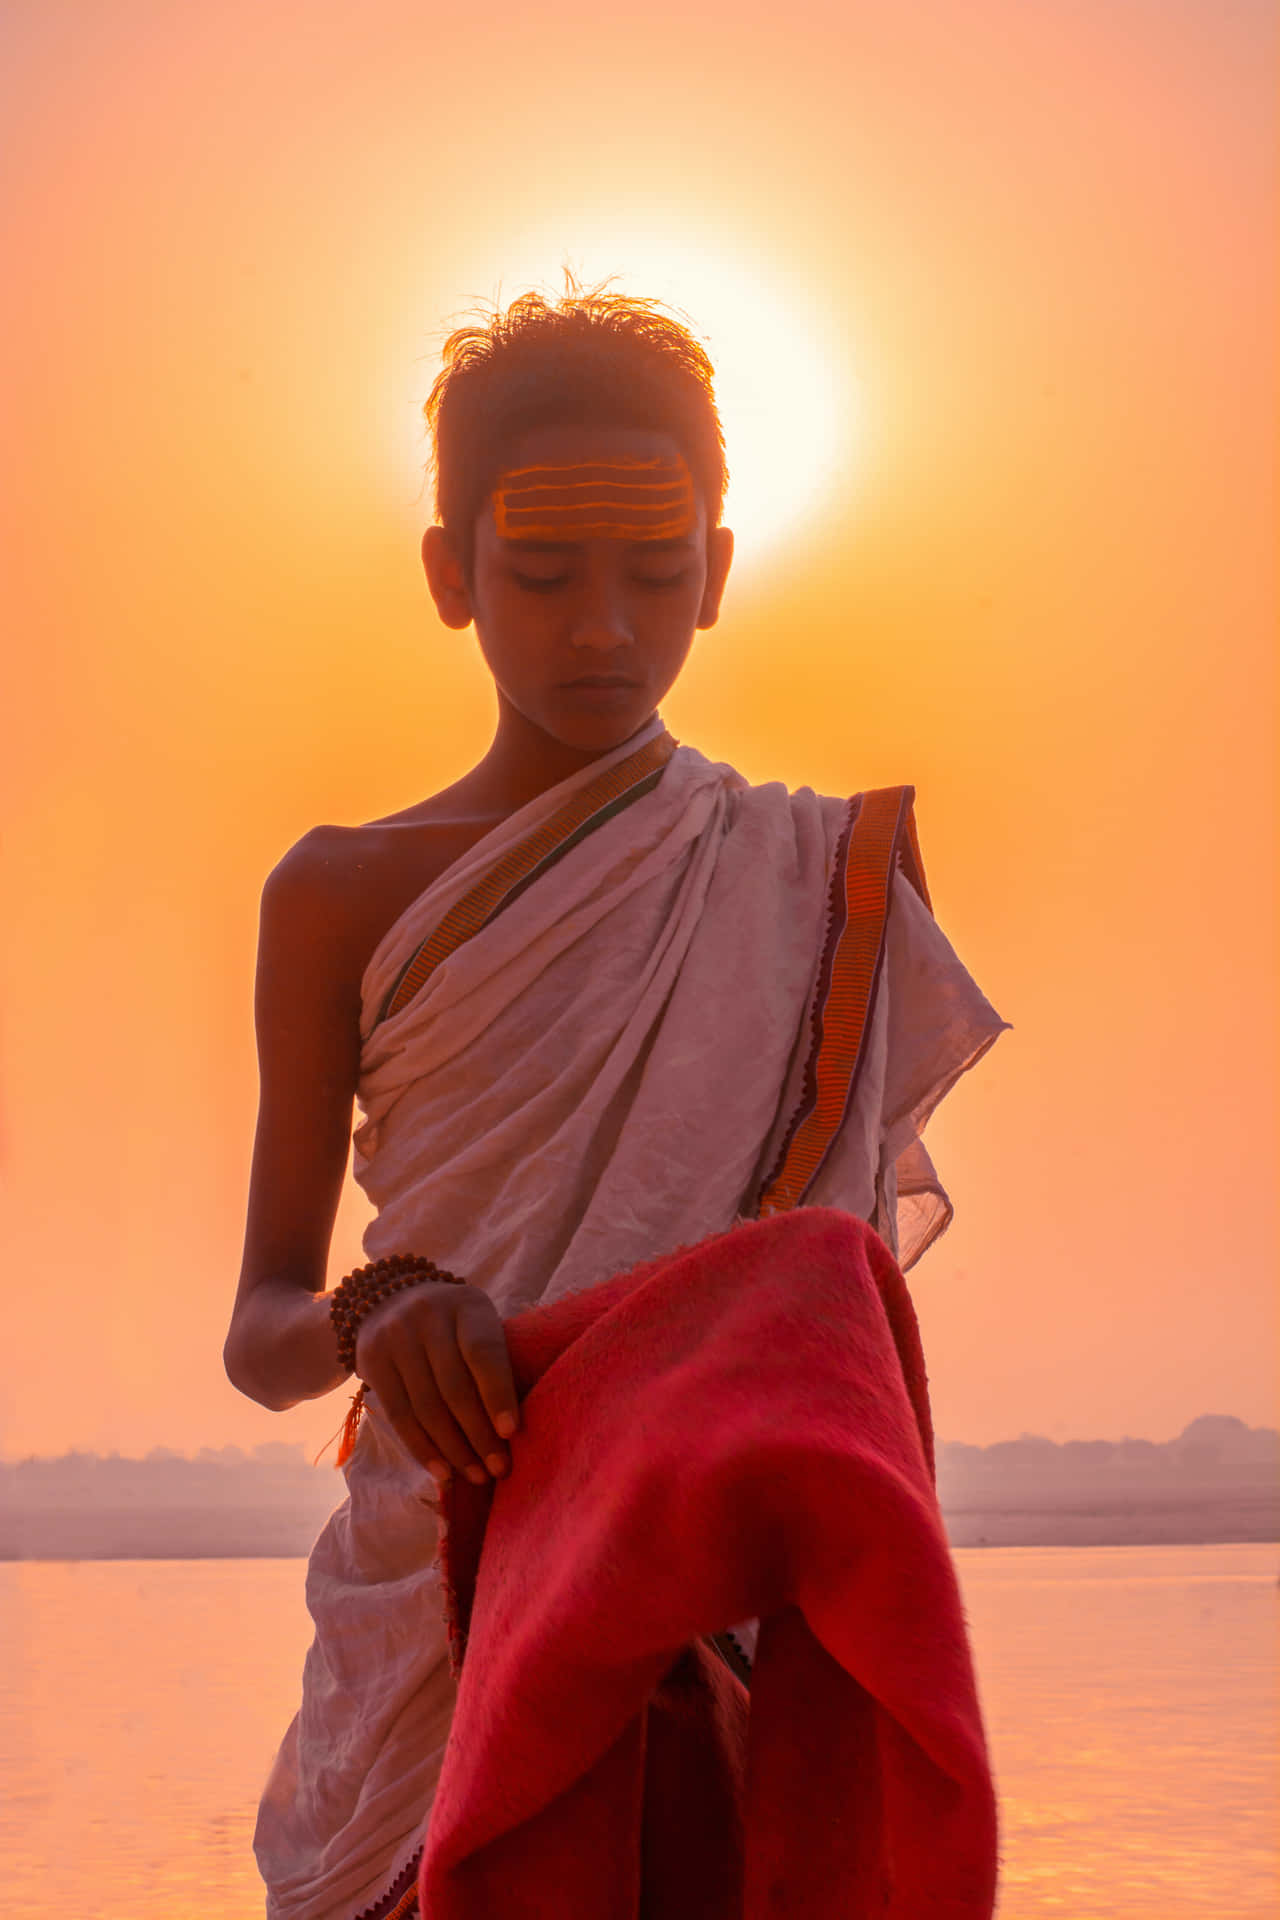 Fotografiade Menino Indiano Em Um Pôr Do Sol Brilhante.